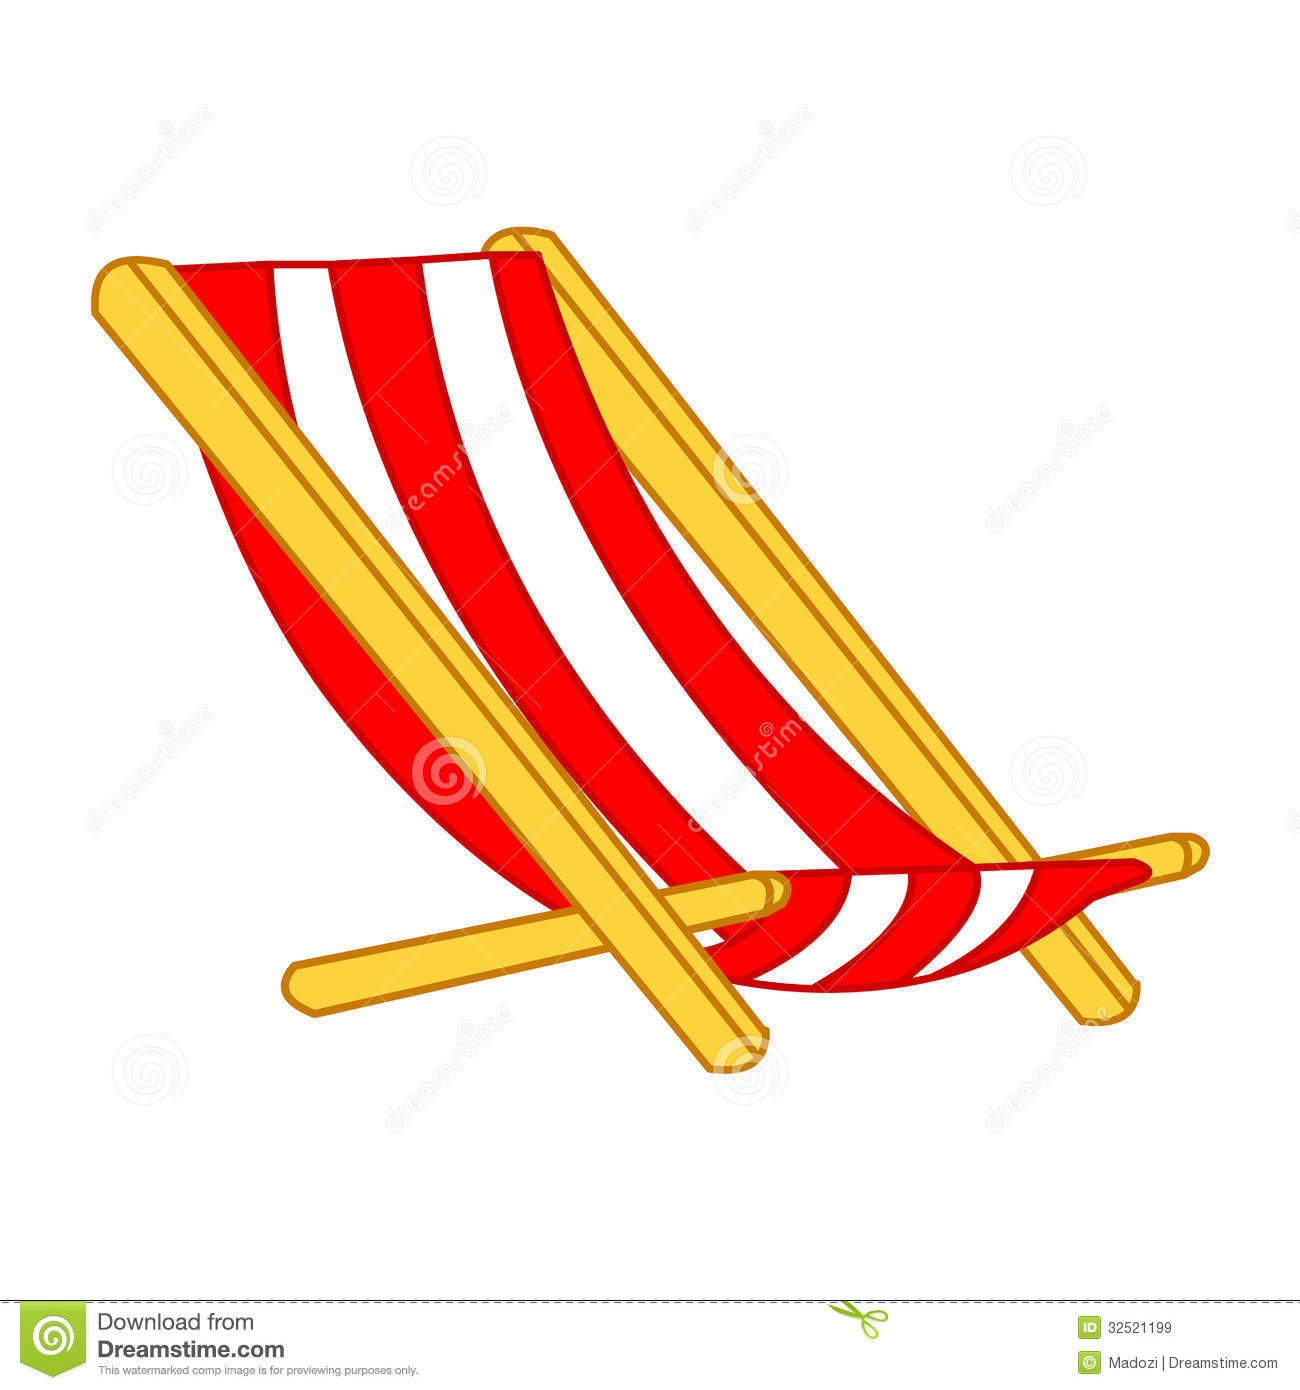 beach chair clipart black and